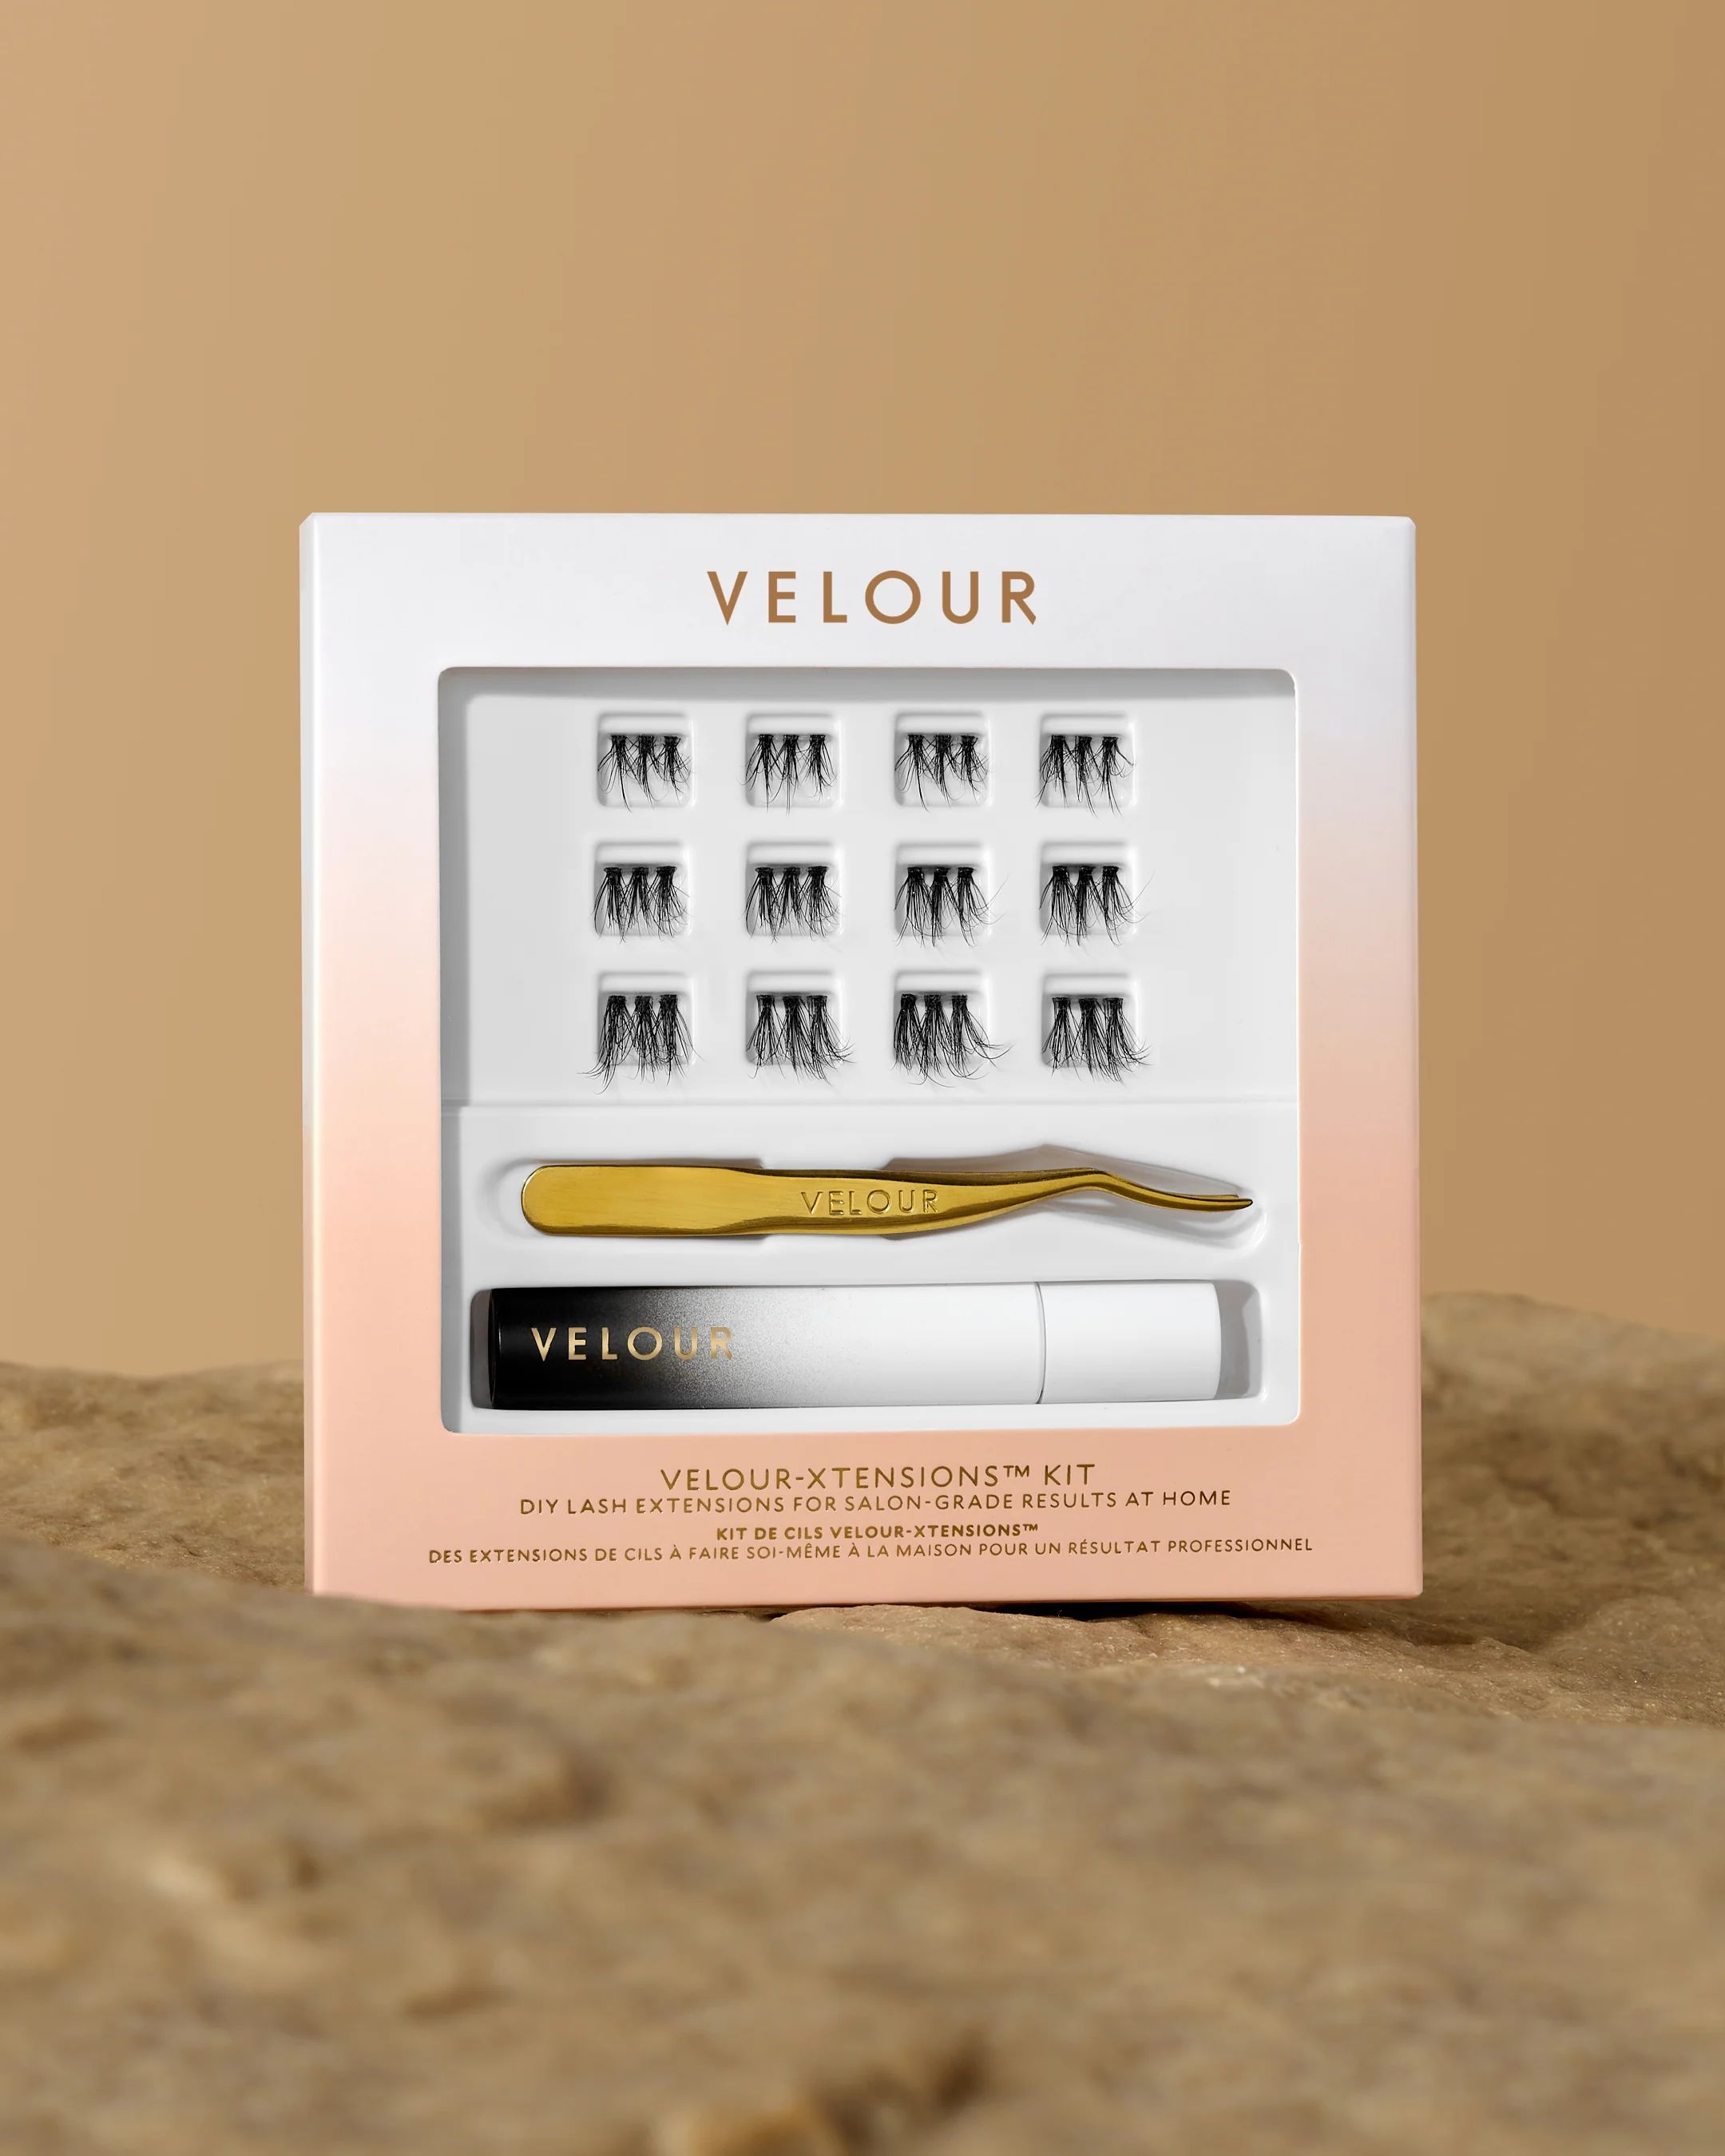 Velour-Xtensions™ Kit | Velour Beauty